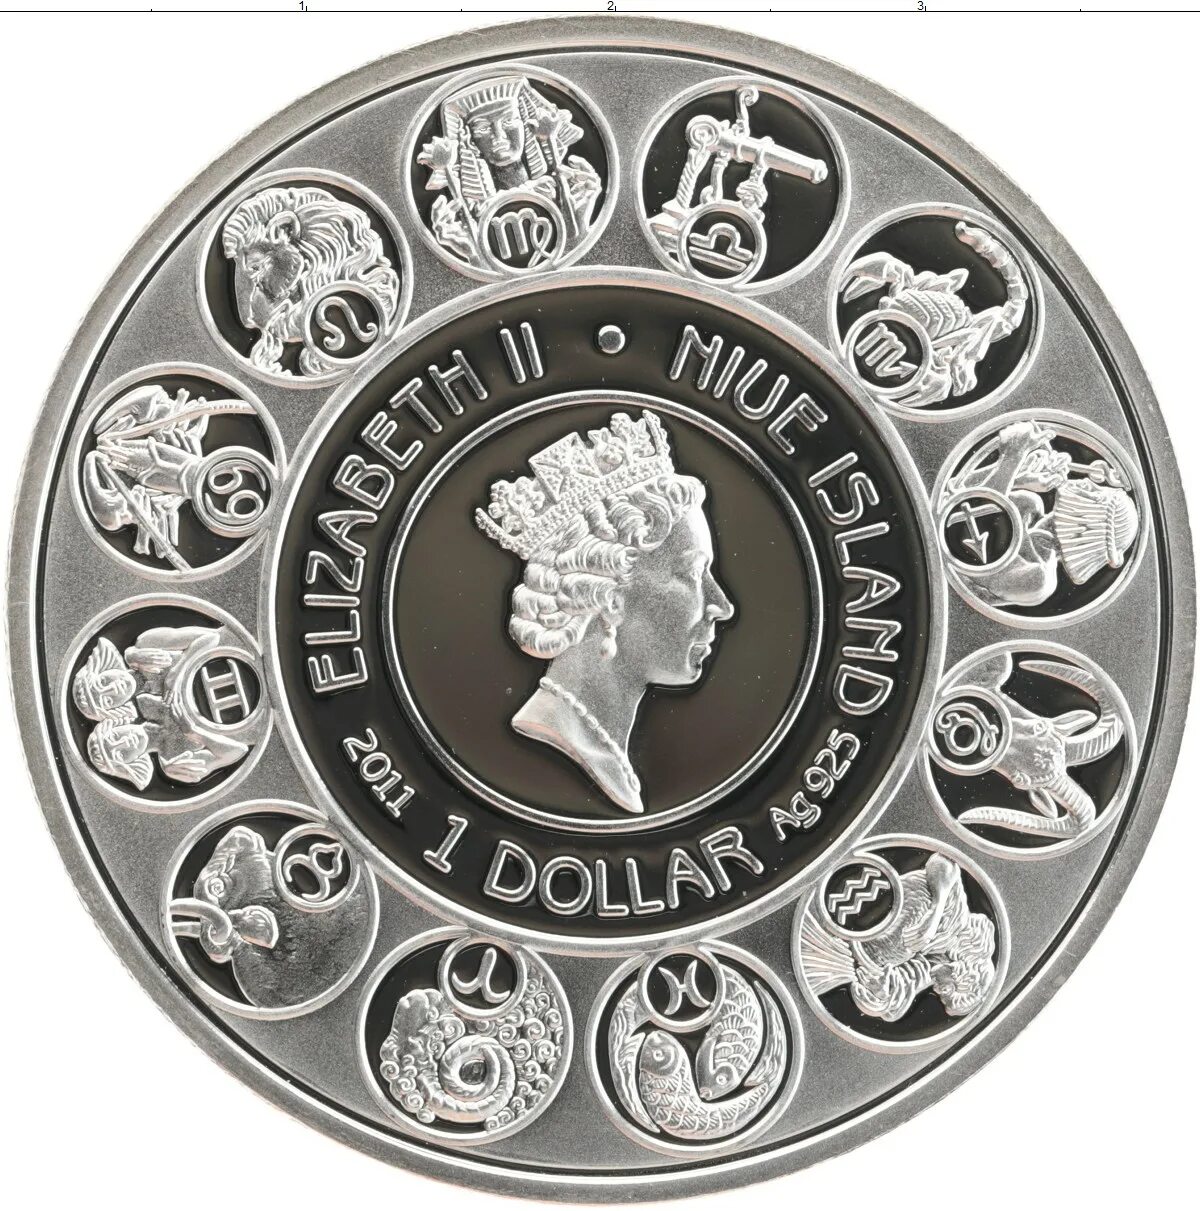 Ниуэ 1 доллар, 2010 знаки зодиака - Водолей. Монеты Дева серебро Ниуэ. Монеты Ниуэ знаки зодиака. Монета Ниуэ 2010 1 доллар серебро.